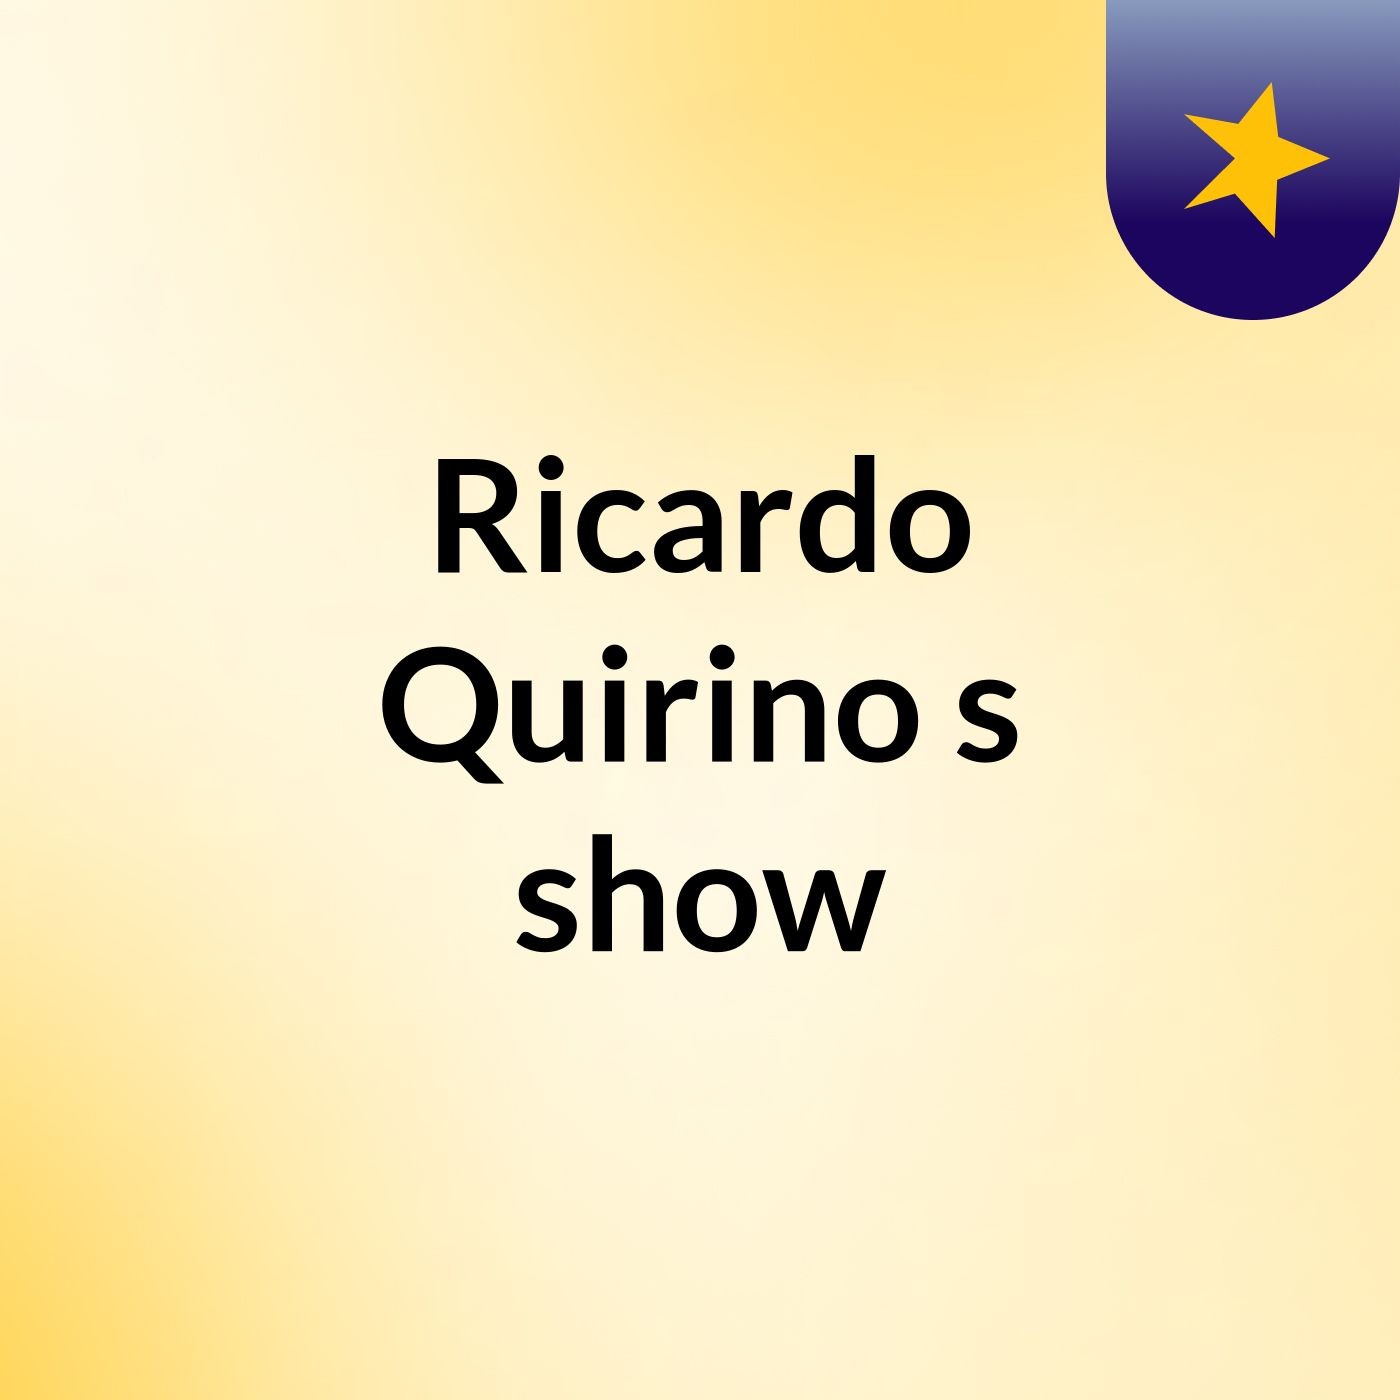 Ricardo Quirino's show